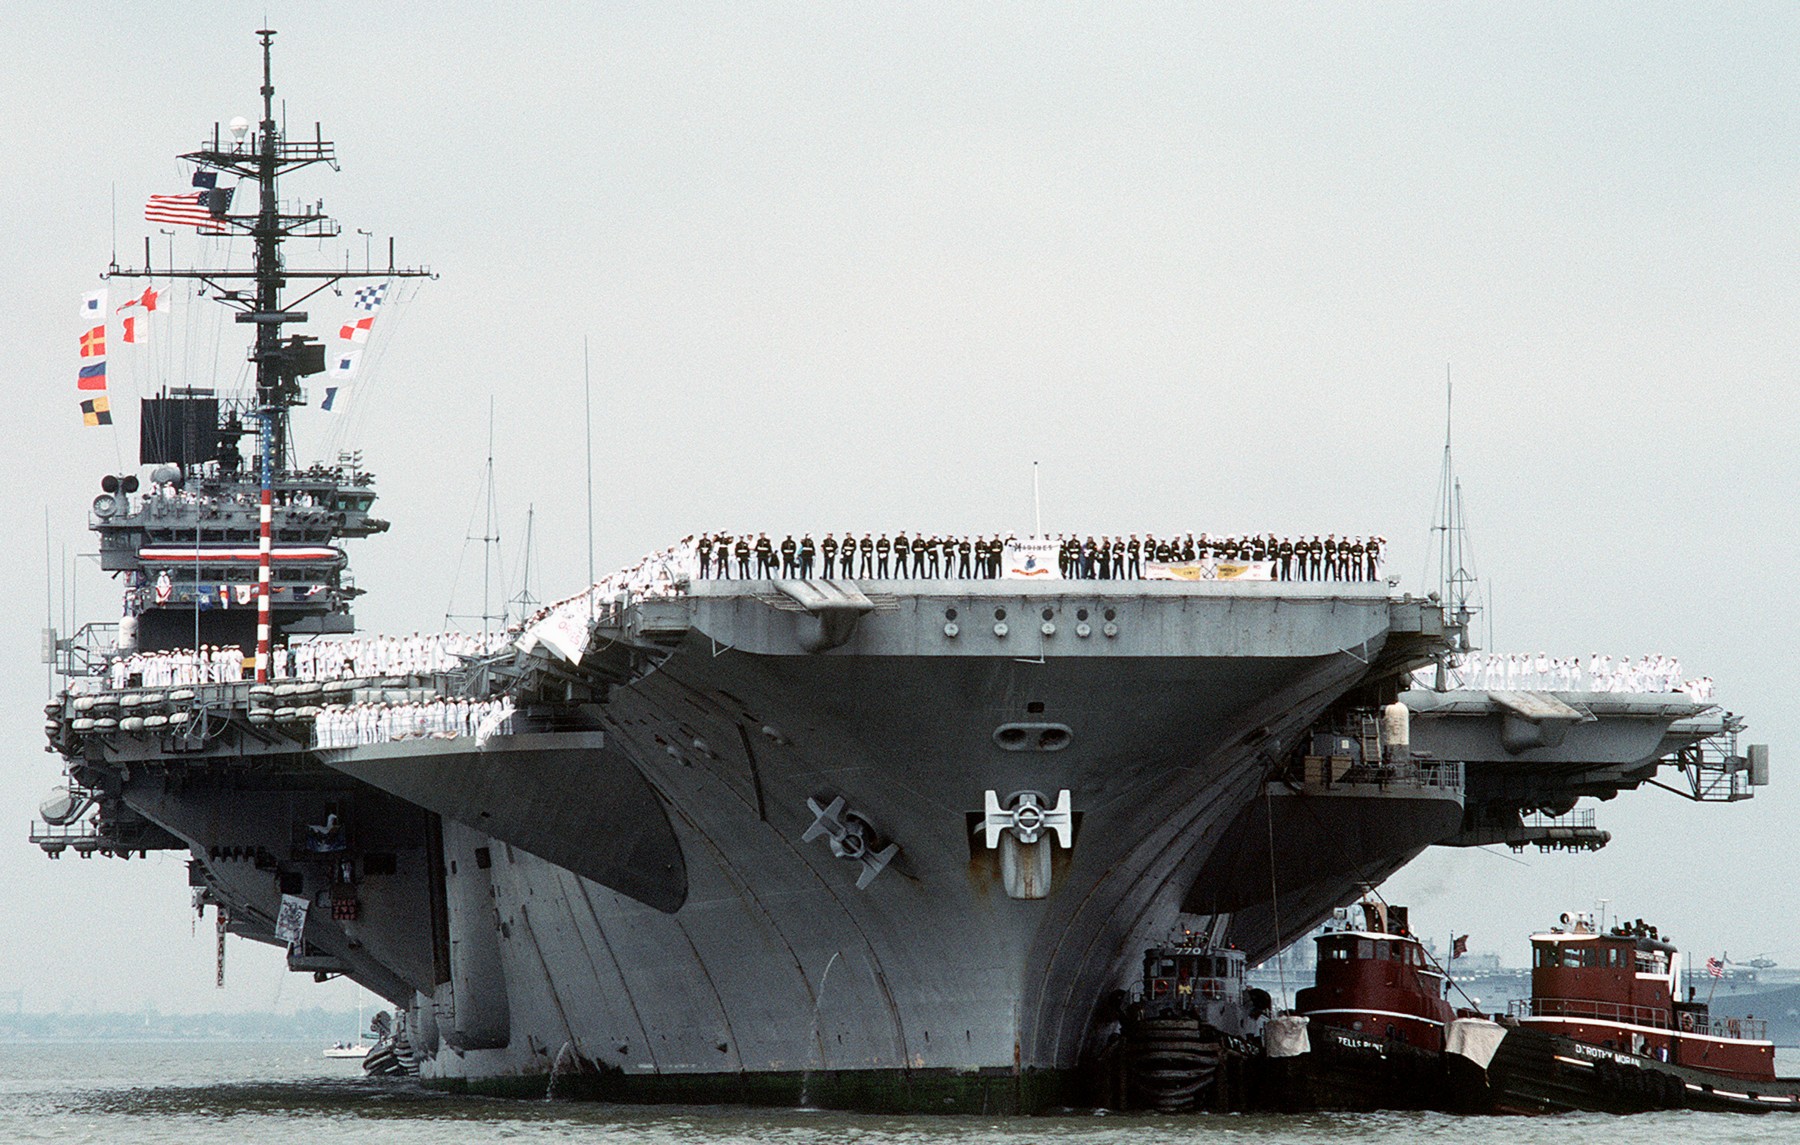 cv-66 uss america kitty hawk class aircraft carrier us navy returning norfolk desert storm 99